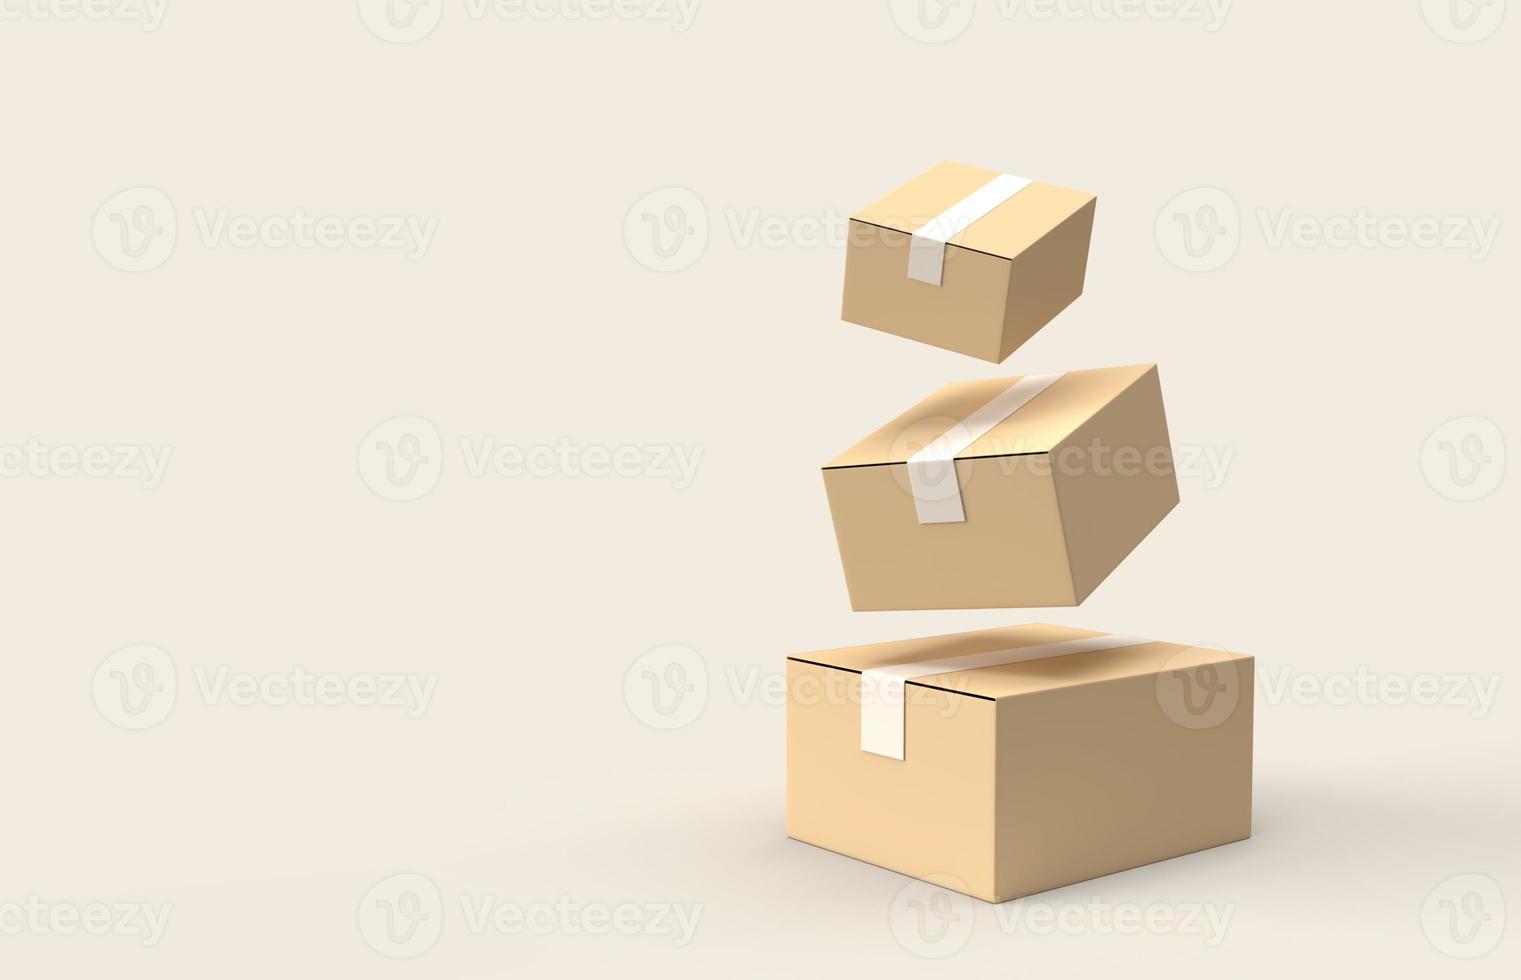 Pila 3d realista de caja de cartón o paquete con espacio vacío. concepto de entrega de mercancías. foto